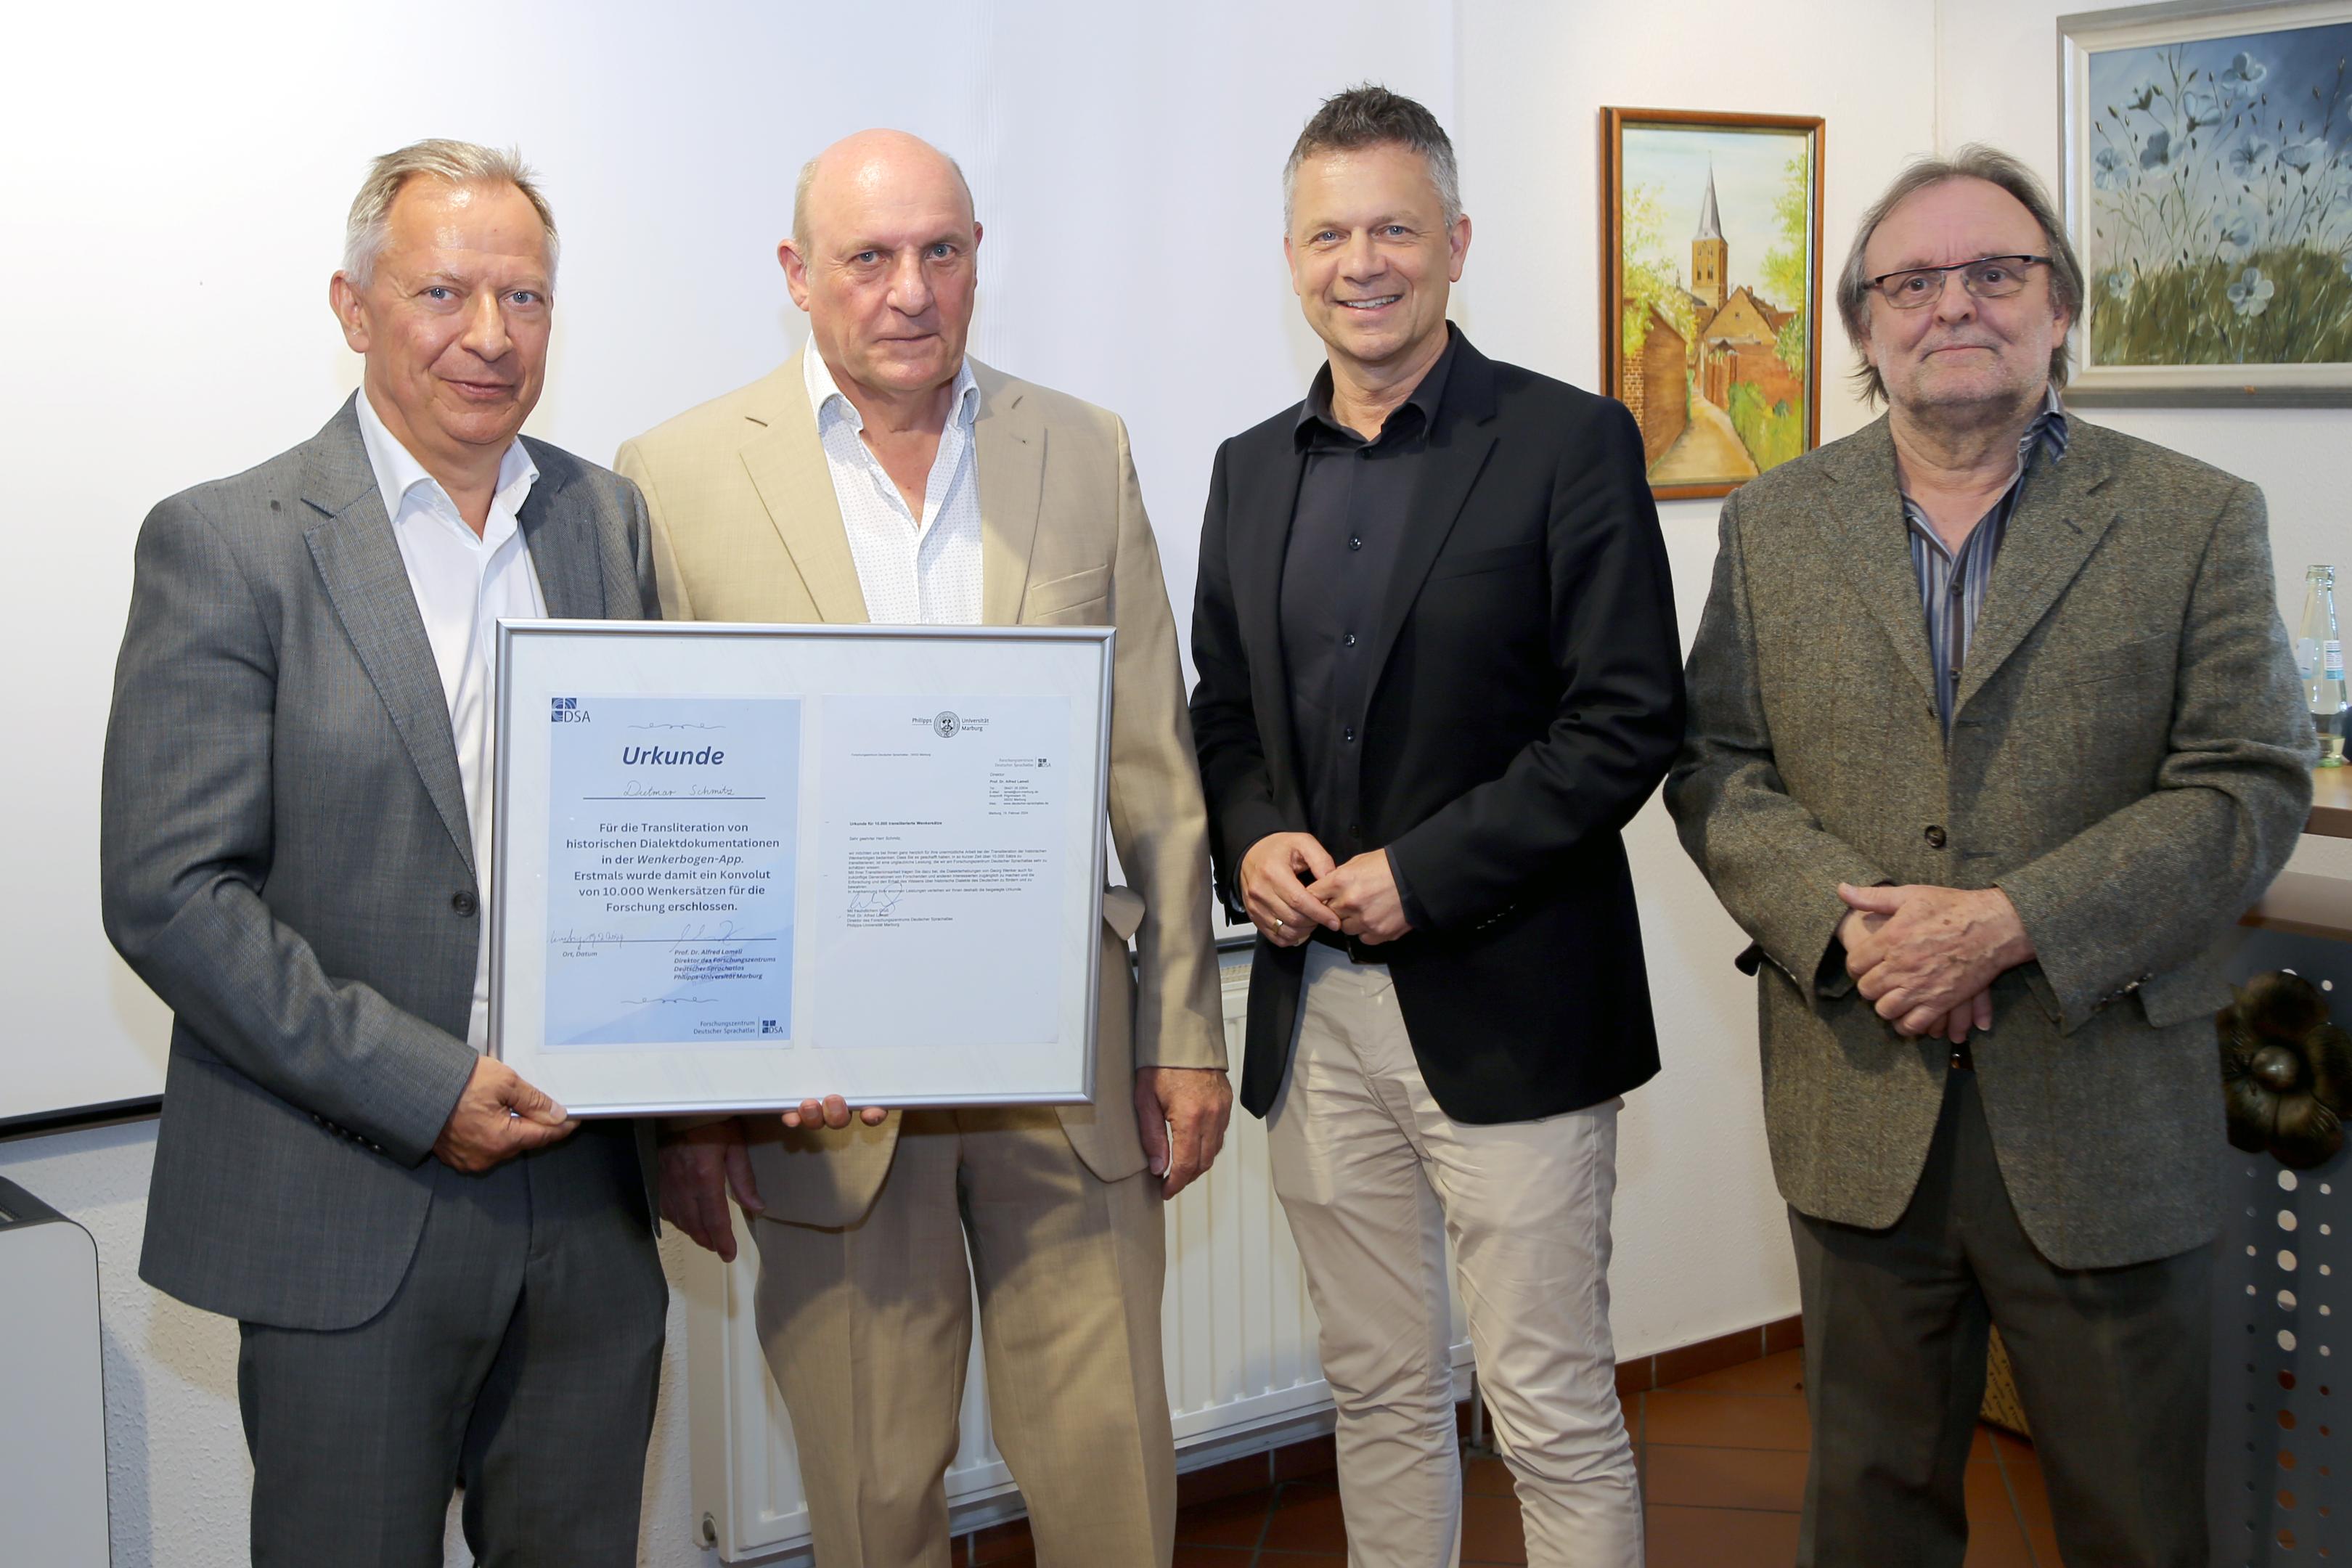 Zu der Urkunde, die Dietmar Schmitz (2.v.l.) für seine ehrenamtliche Arbeit in der Mundartforschung von der Philipps-Universität Marburg erhalten hat, gratulierten Stephan Pusch (links), Hermann Josef Heinen und Christian Pape (von rechts). 